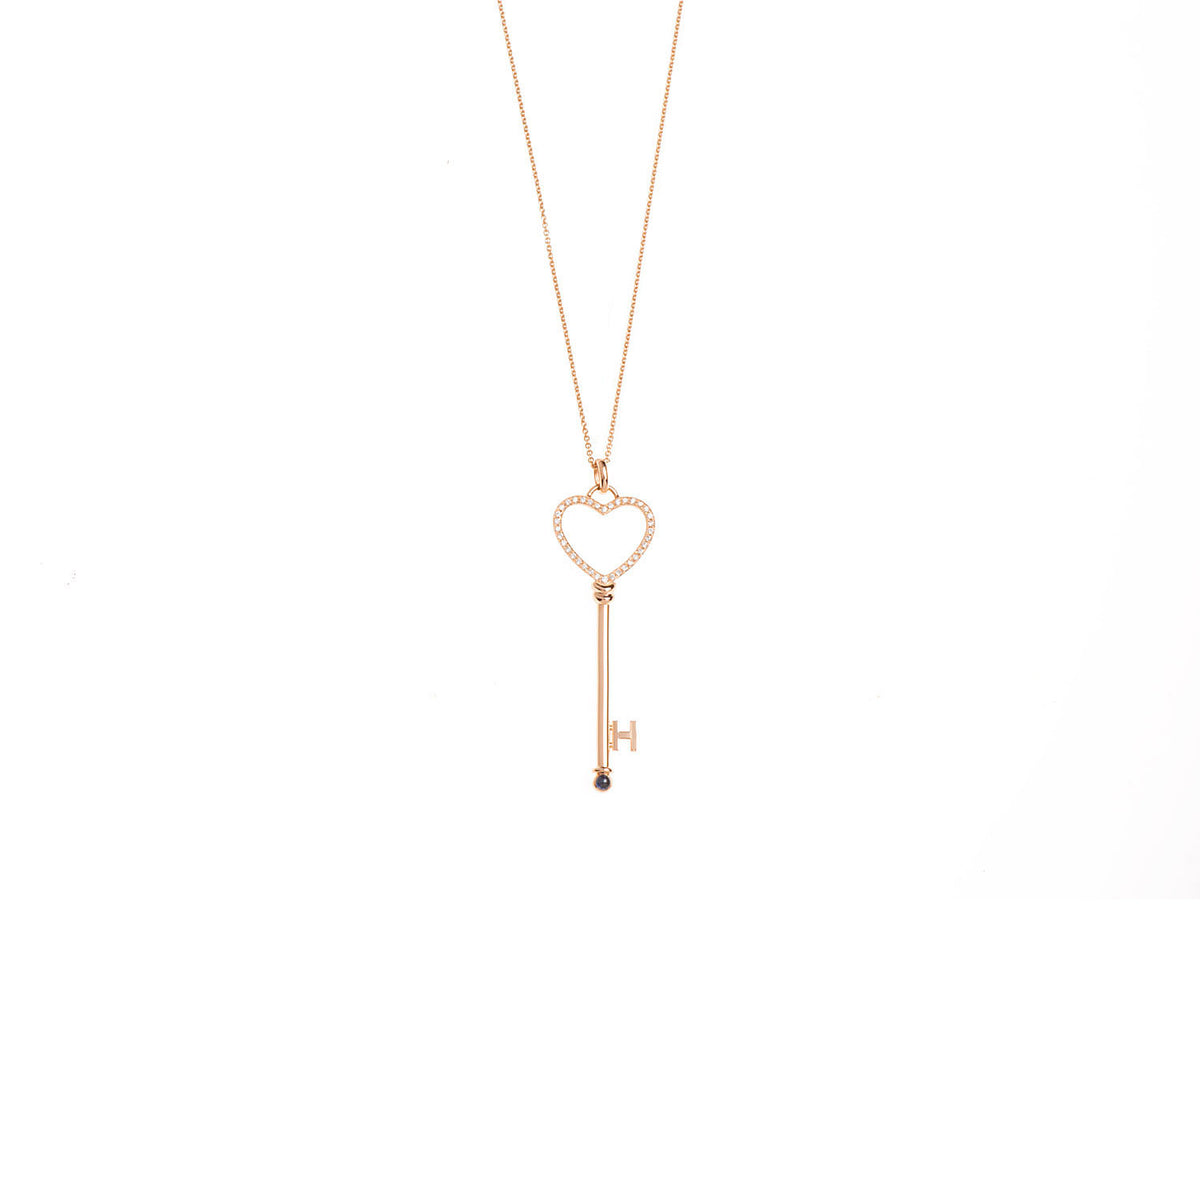 Key Necklace. Golden Key Necklace. Heart necklace. Diamond key necklace.